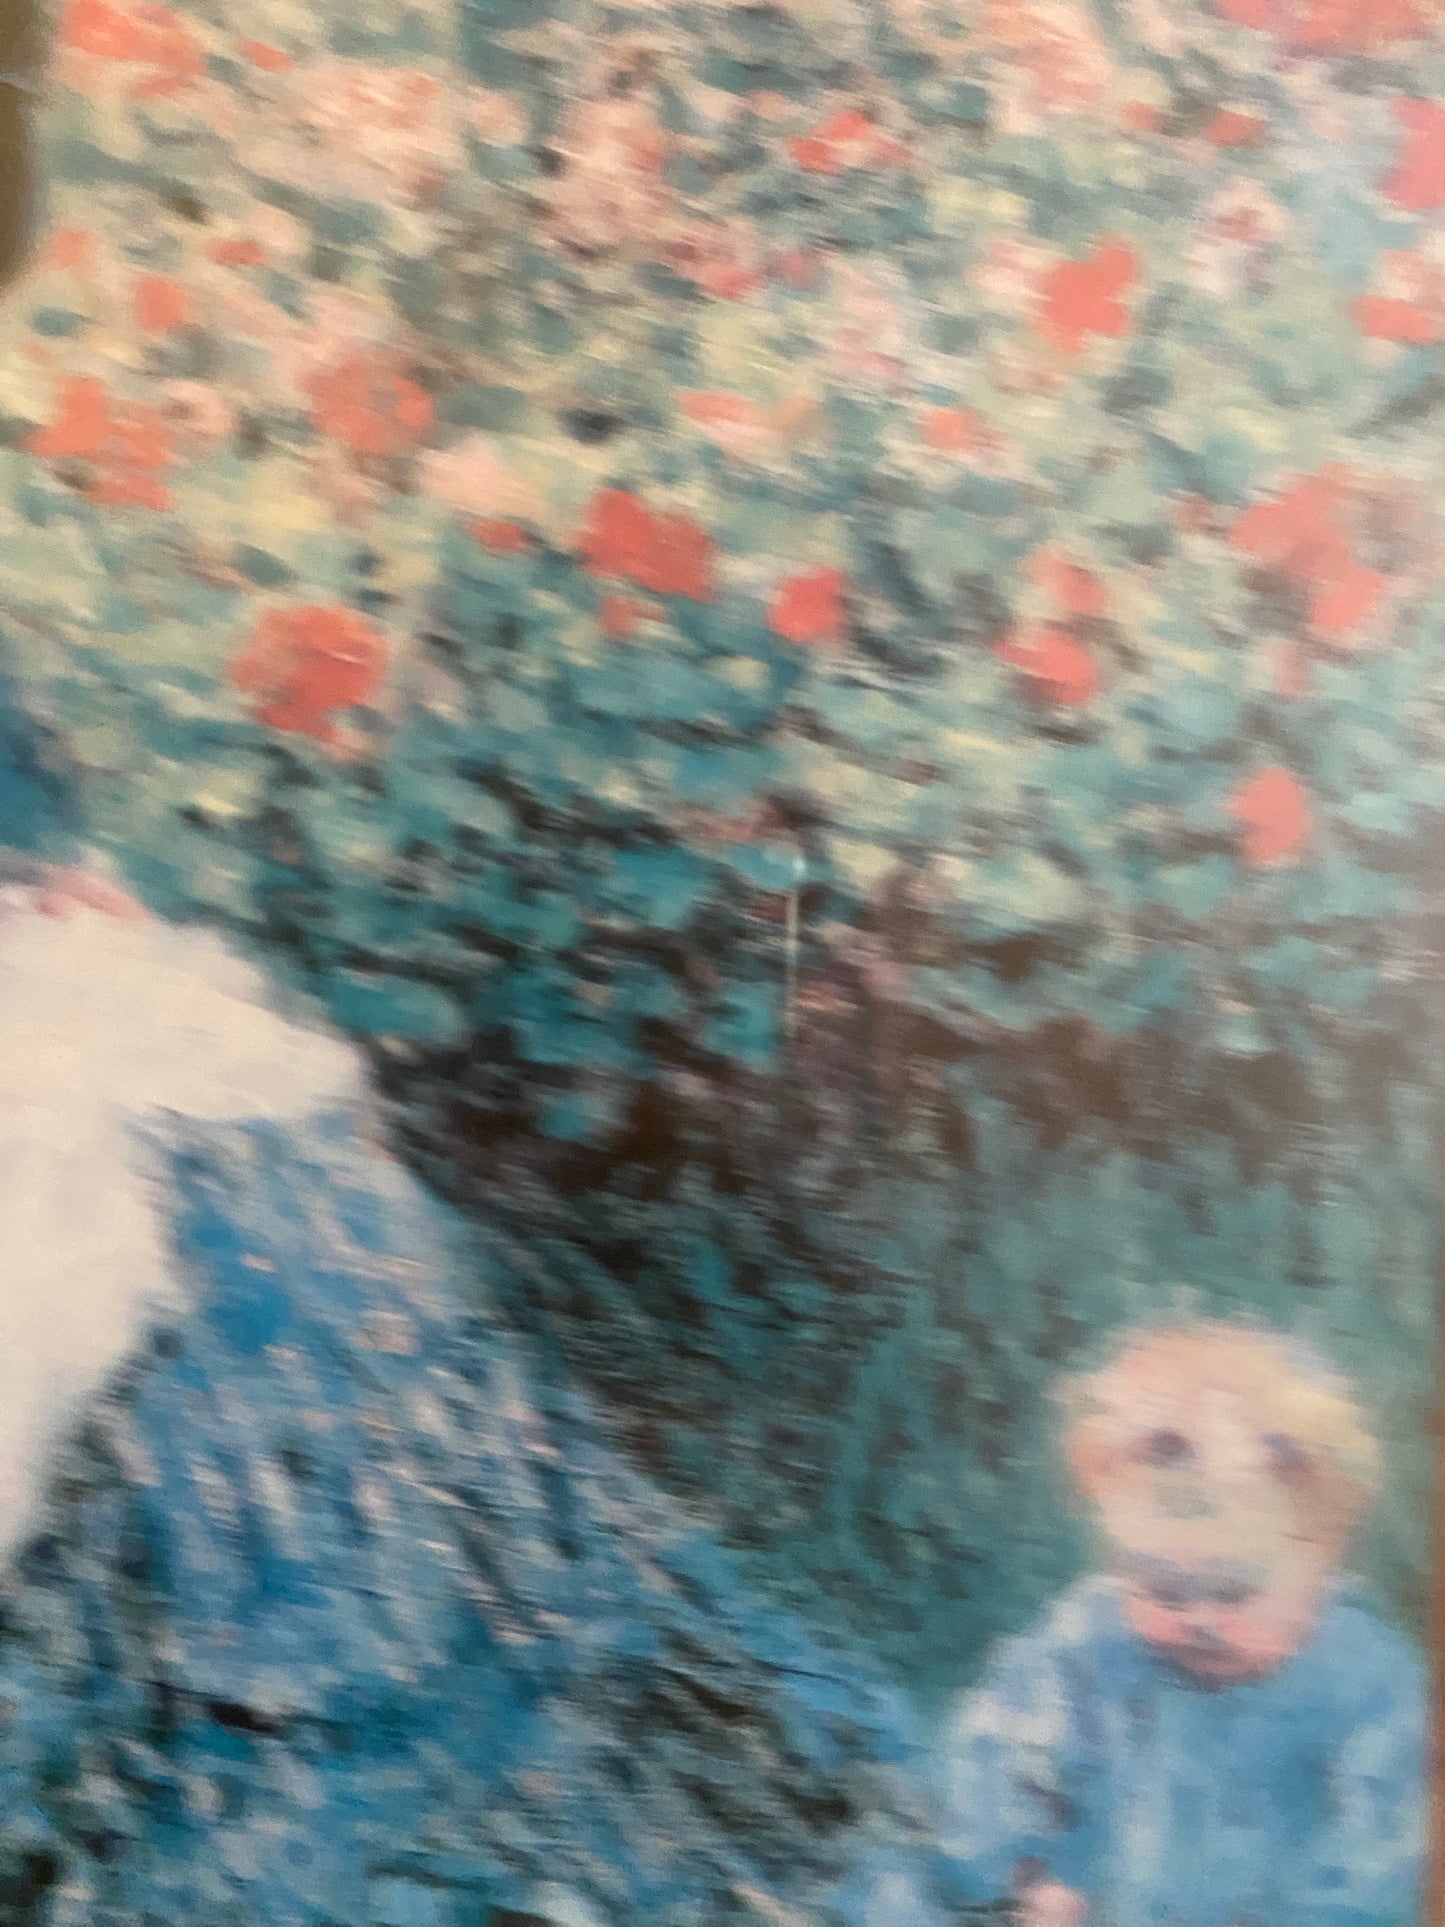 Claude Monet (1840-1926) Grafisches Bild Camille Monet und ein Kind im Garten